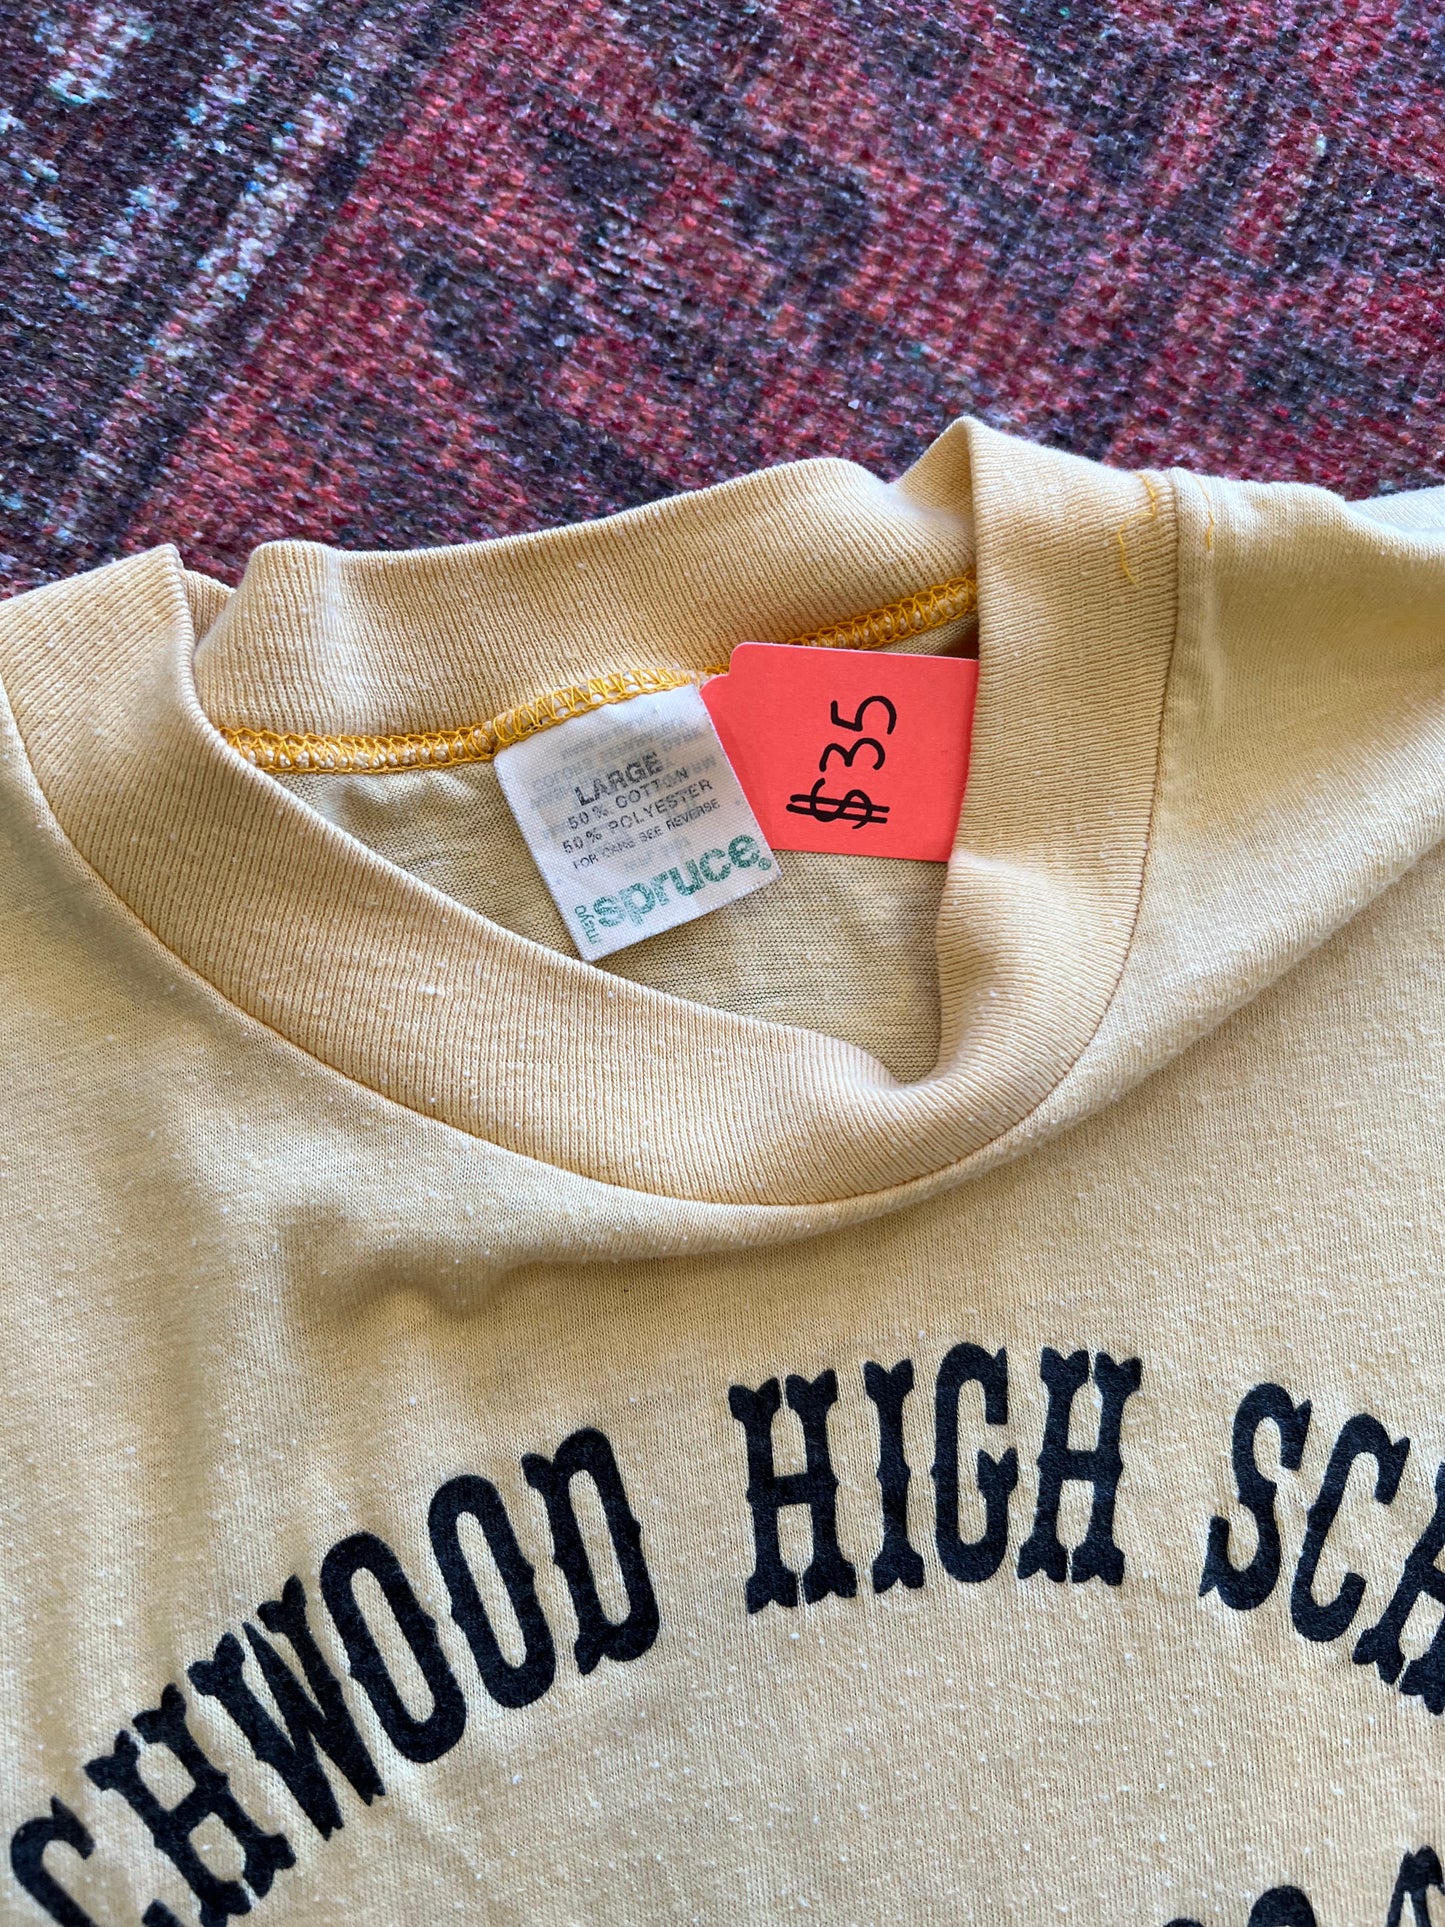 Beachwood HS ‘84 vintage tshirt